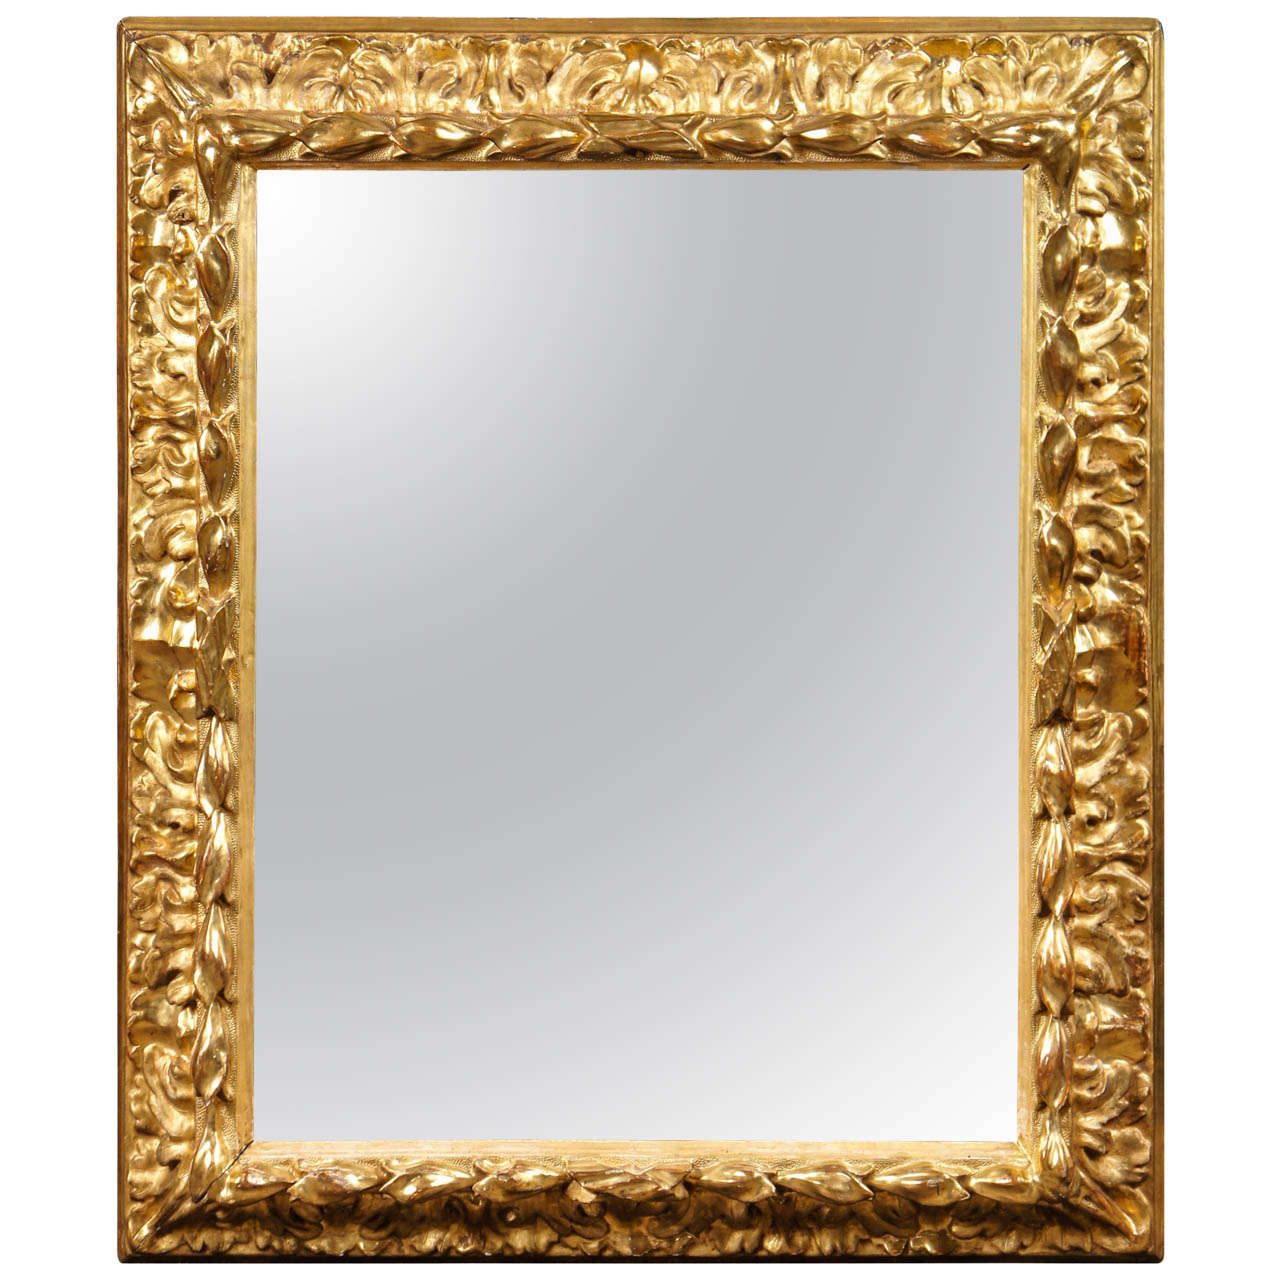 Florentine Style Mirror